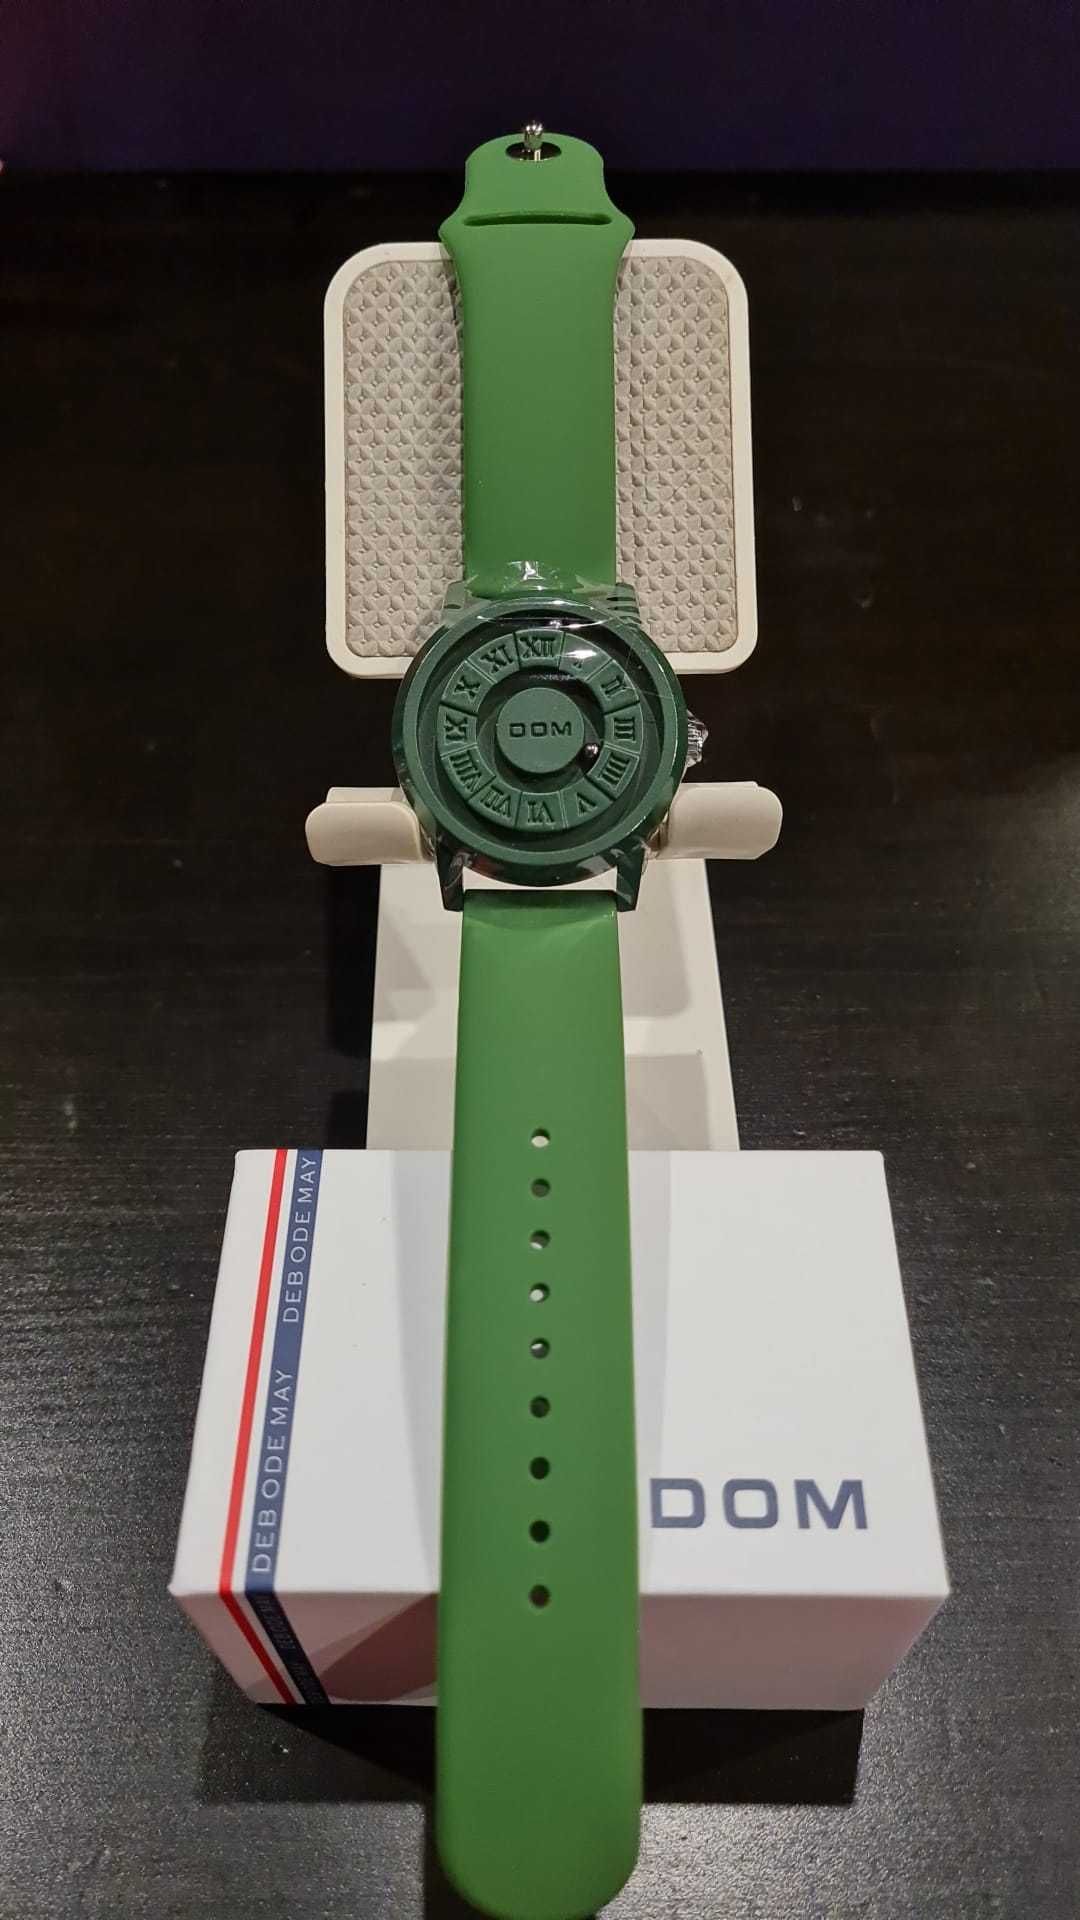 Часовник DOM Trend Concept, Магнитен часовник